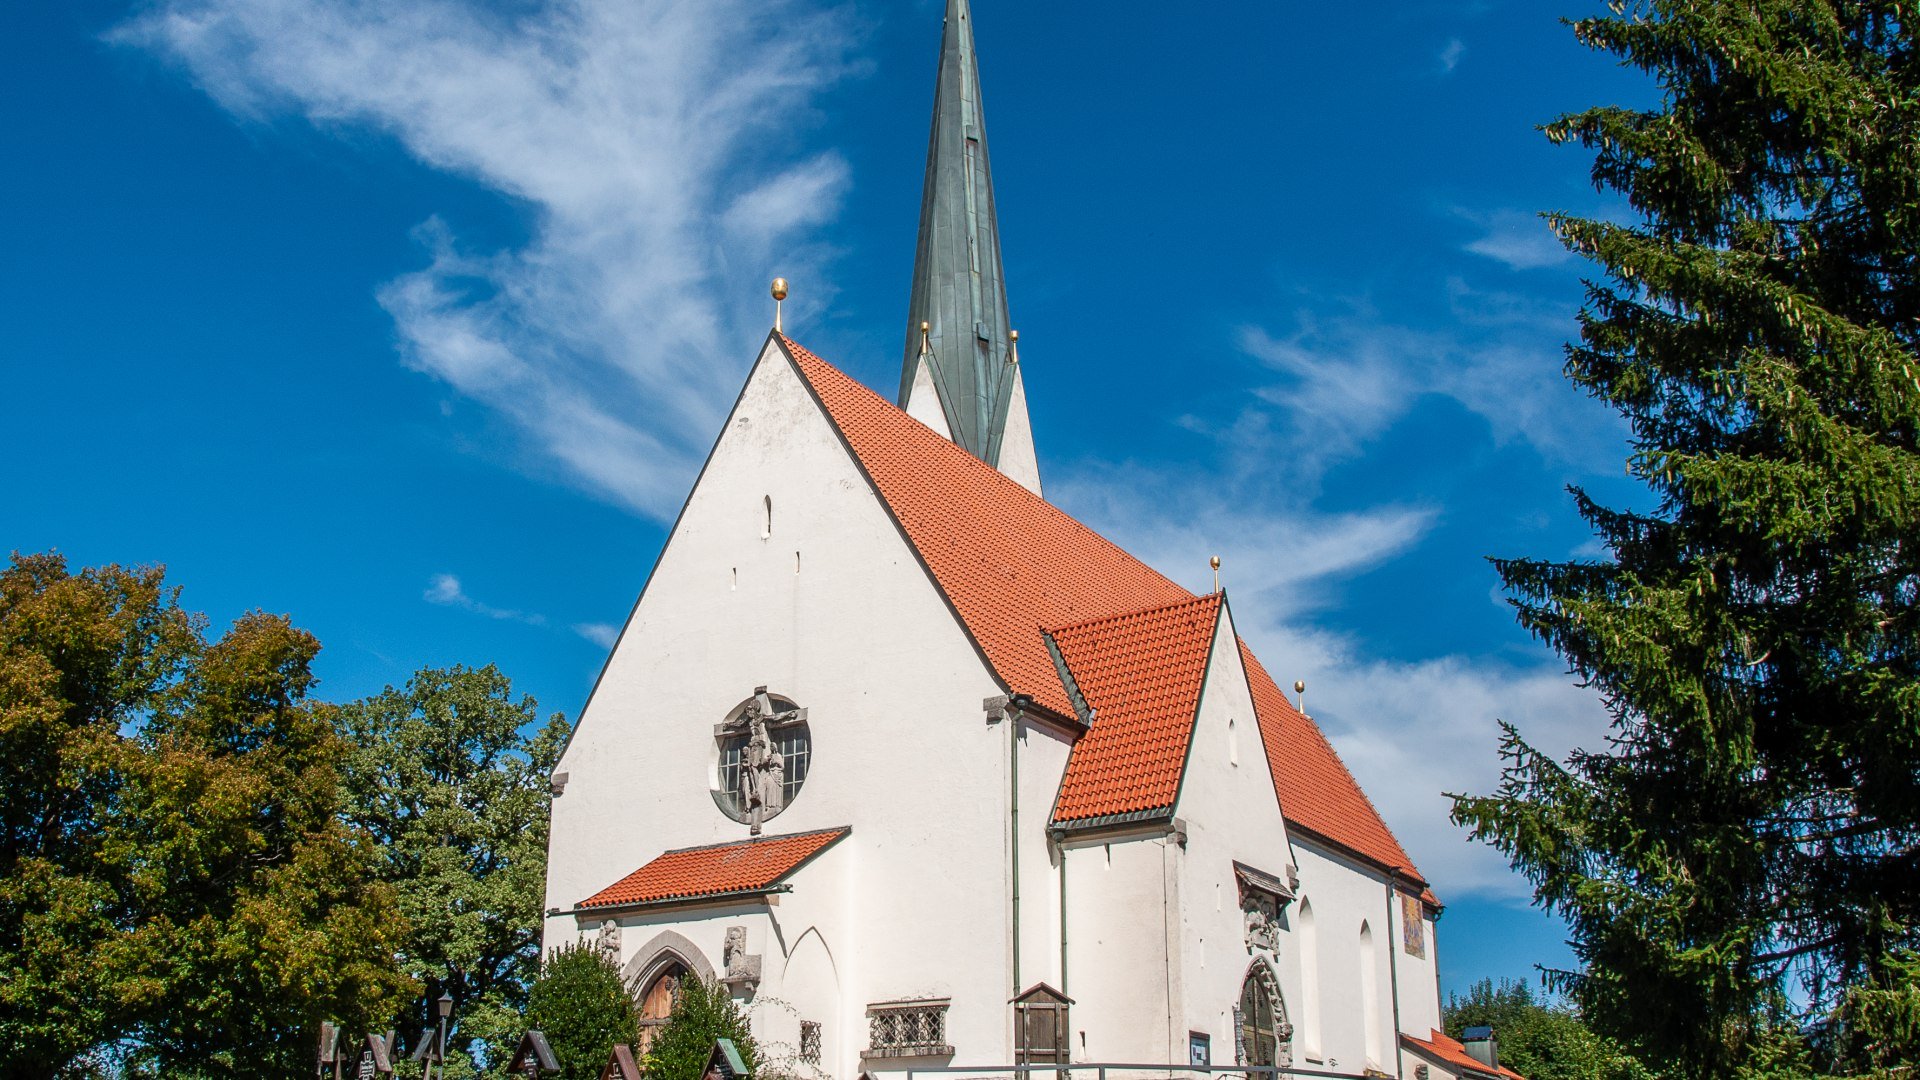 Kath. Kirche Maria Himmelfahrt Bad Wiessee, © Der Tegernsee, Sabine Ziegler-Musiol